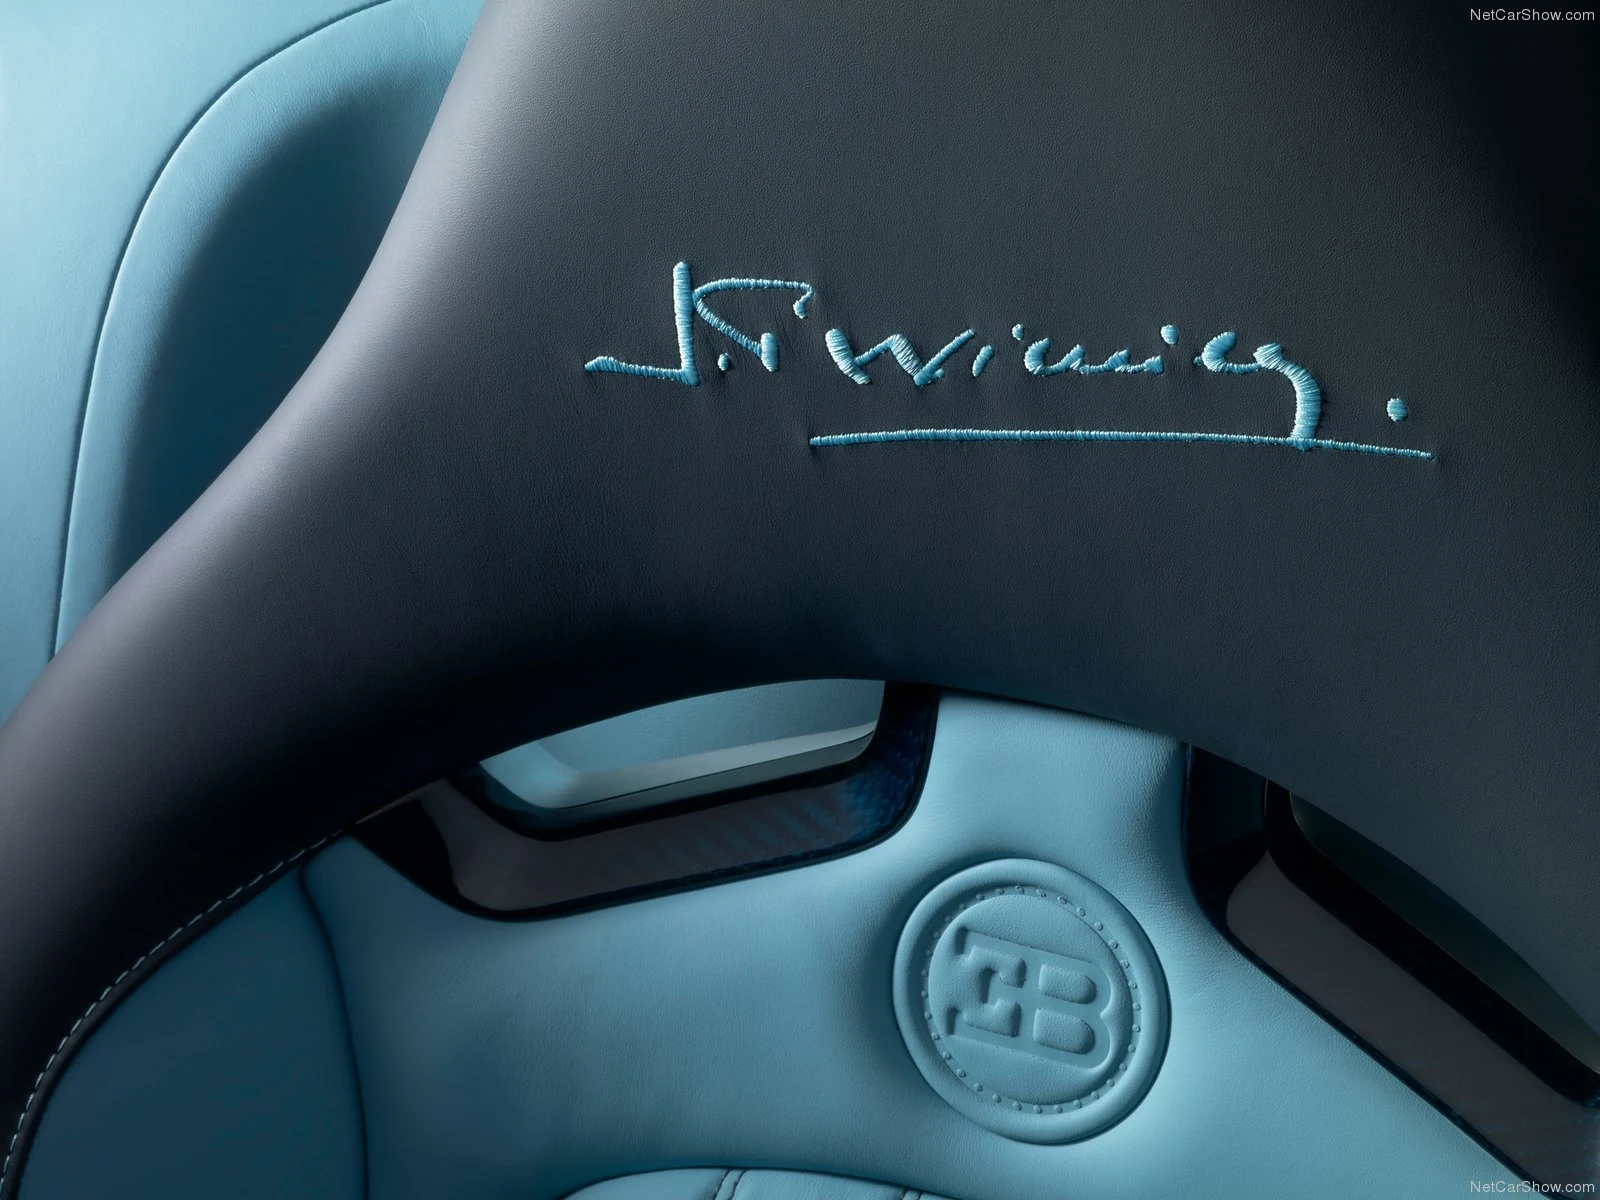 Hình ảnh siêu xe Bugatti Veyron Jean-Pierre Wimille 2013 & nội ngoại thất